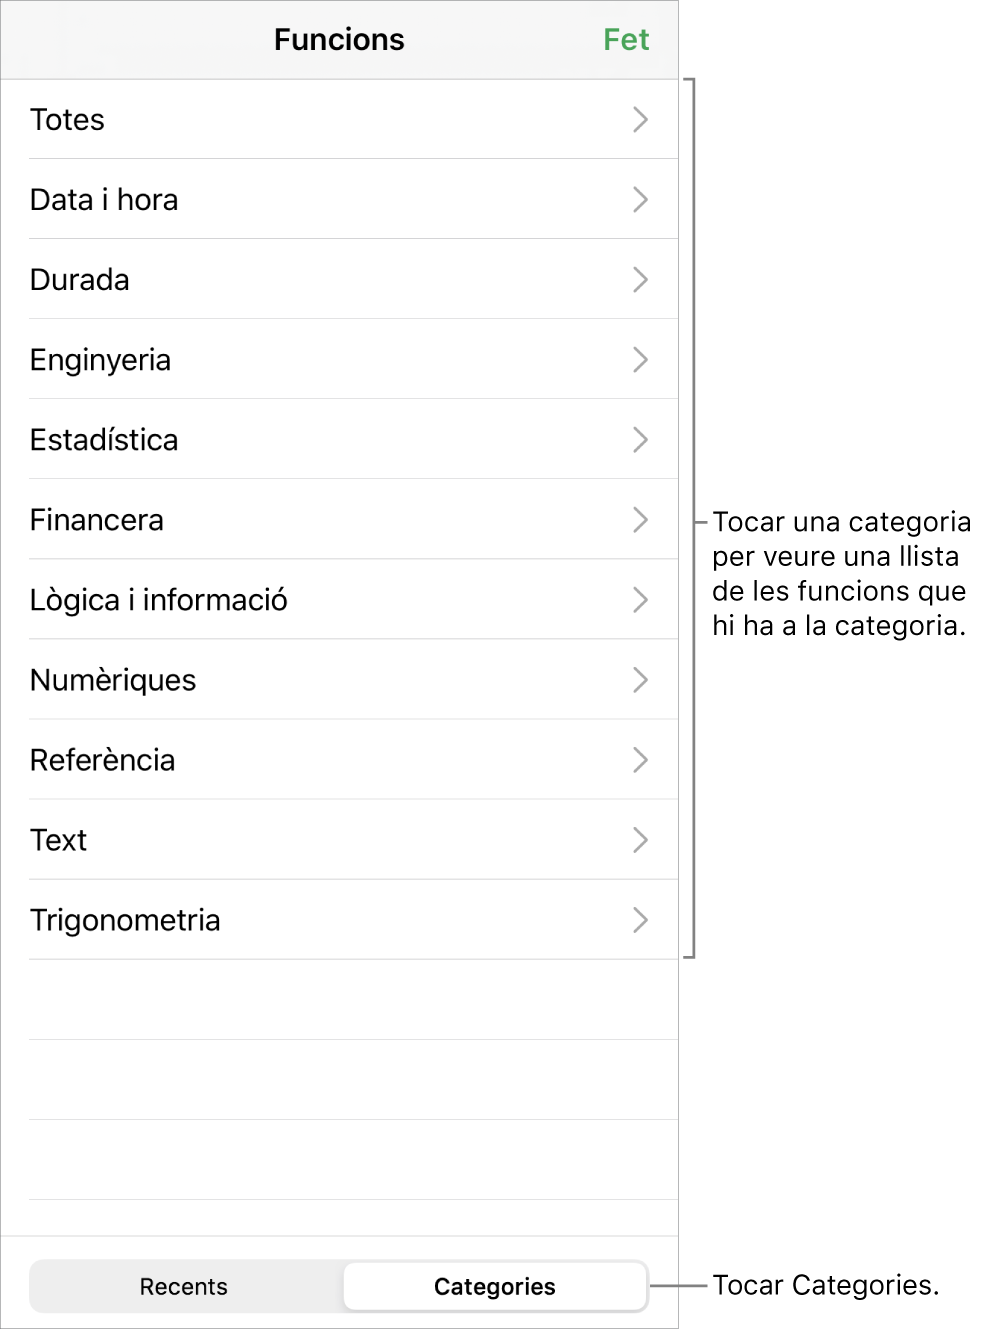 L’explorador de funcions amb el botó Categories seleccionat i la llista de categories a sota.